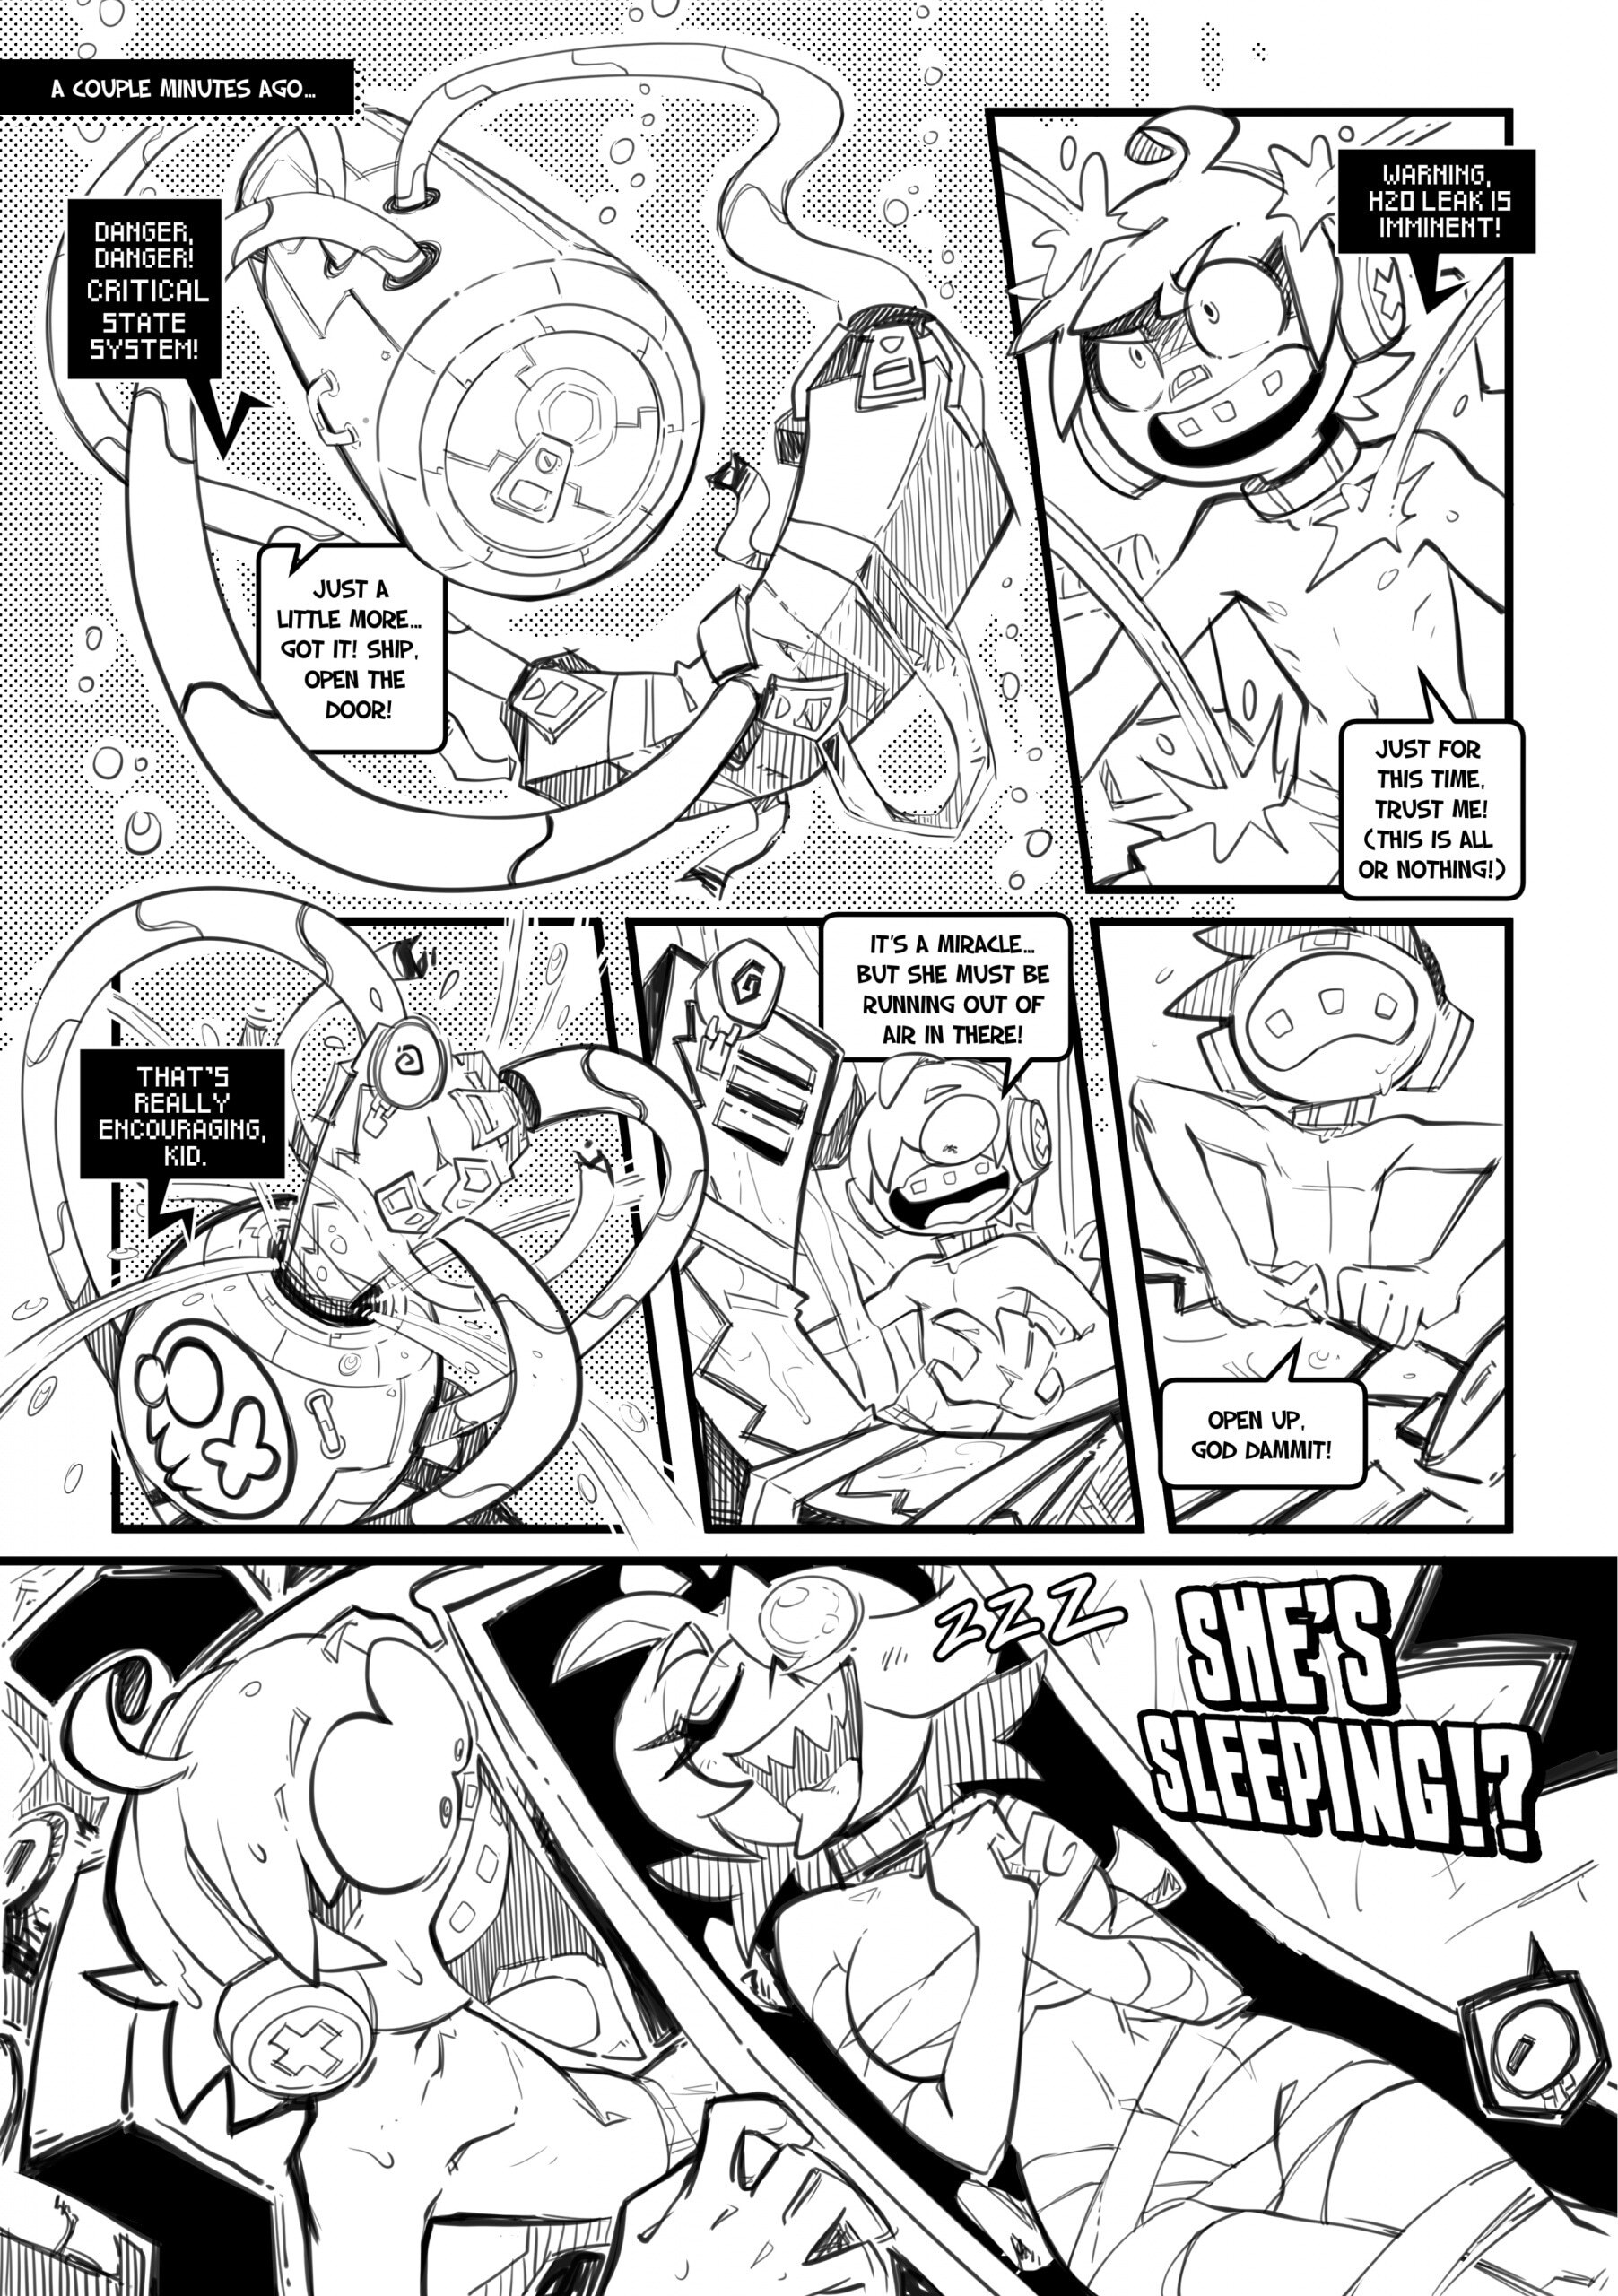 Skarpworld 10: Milk Crisis 4 - Gravity - Page 19